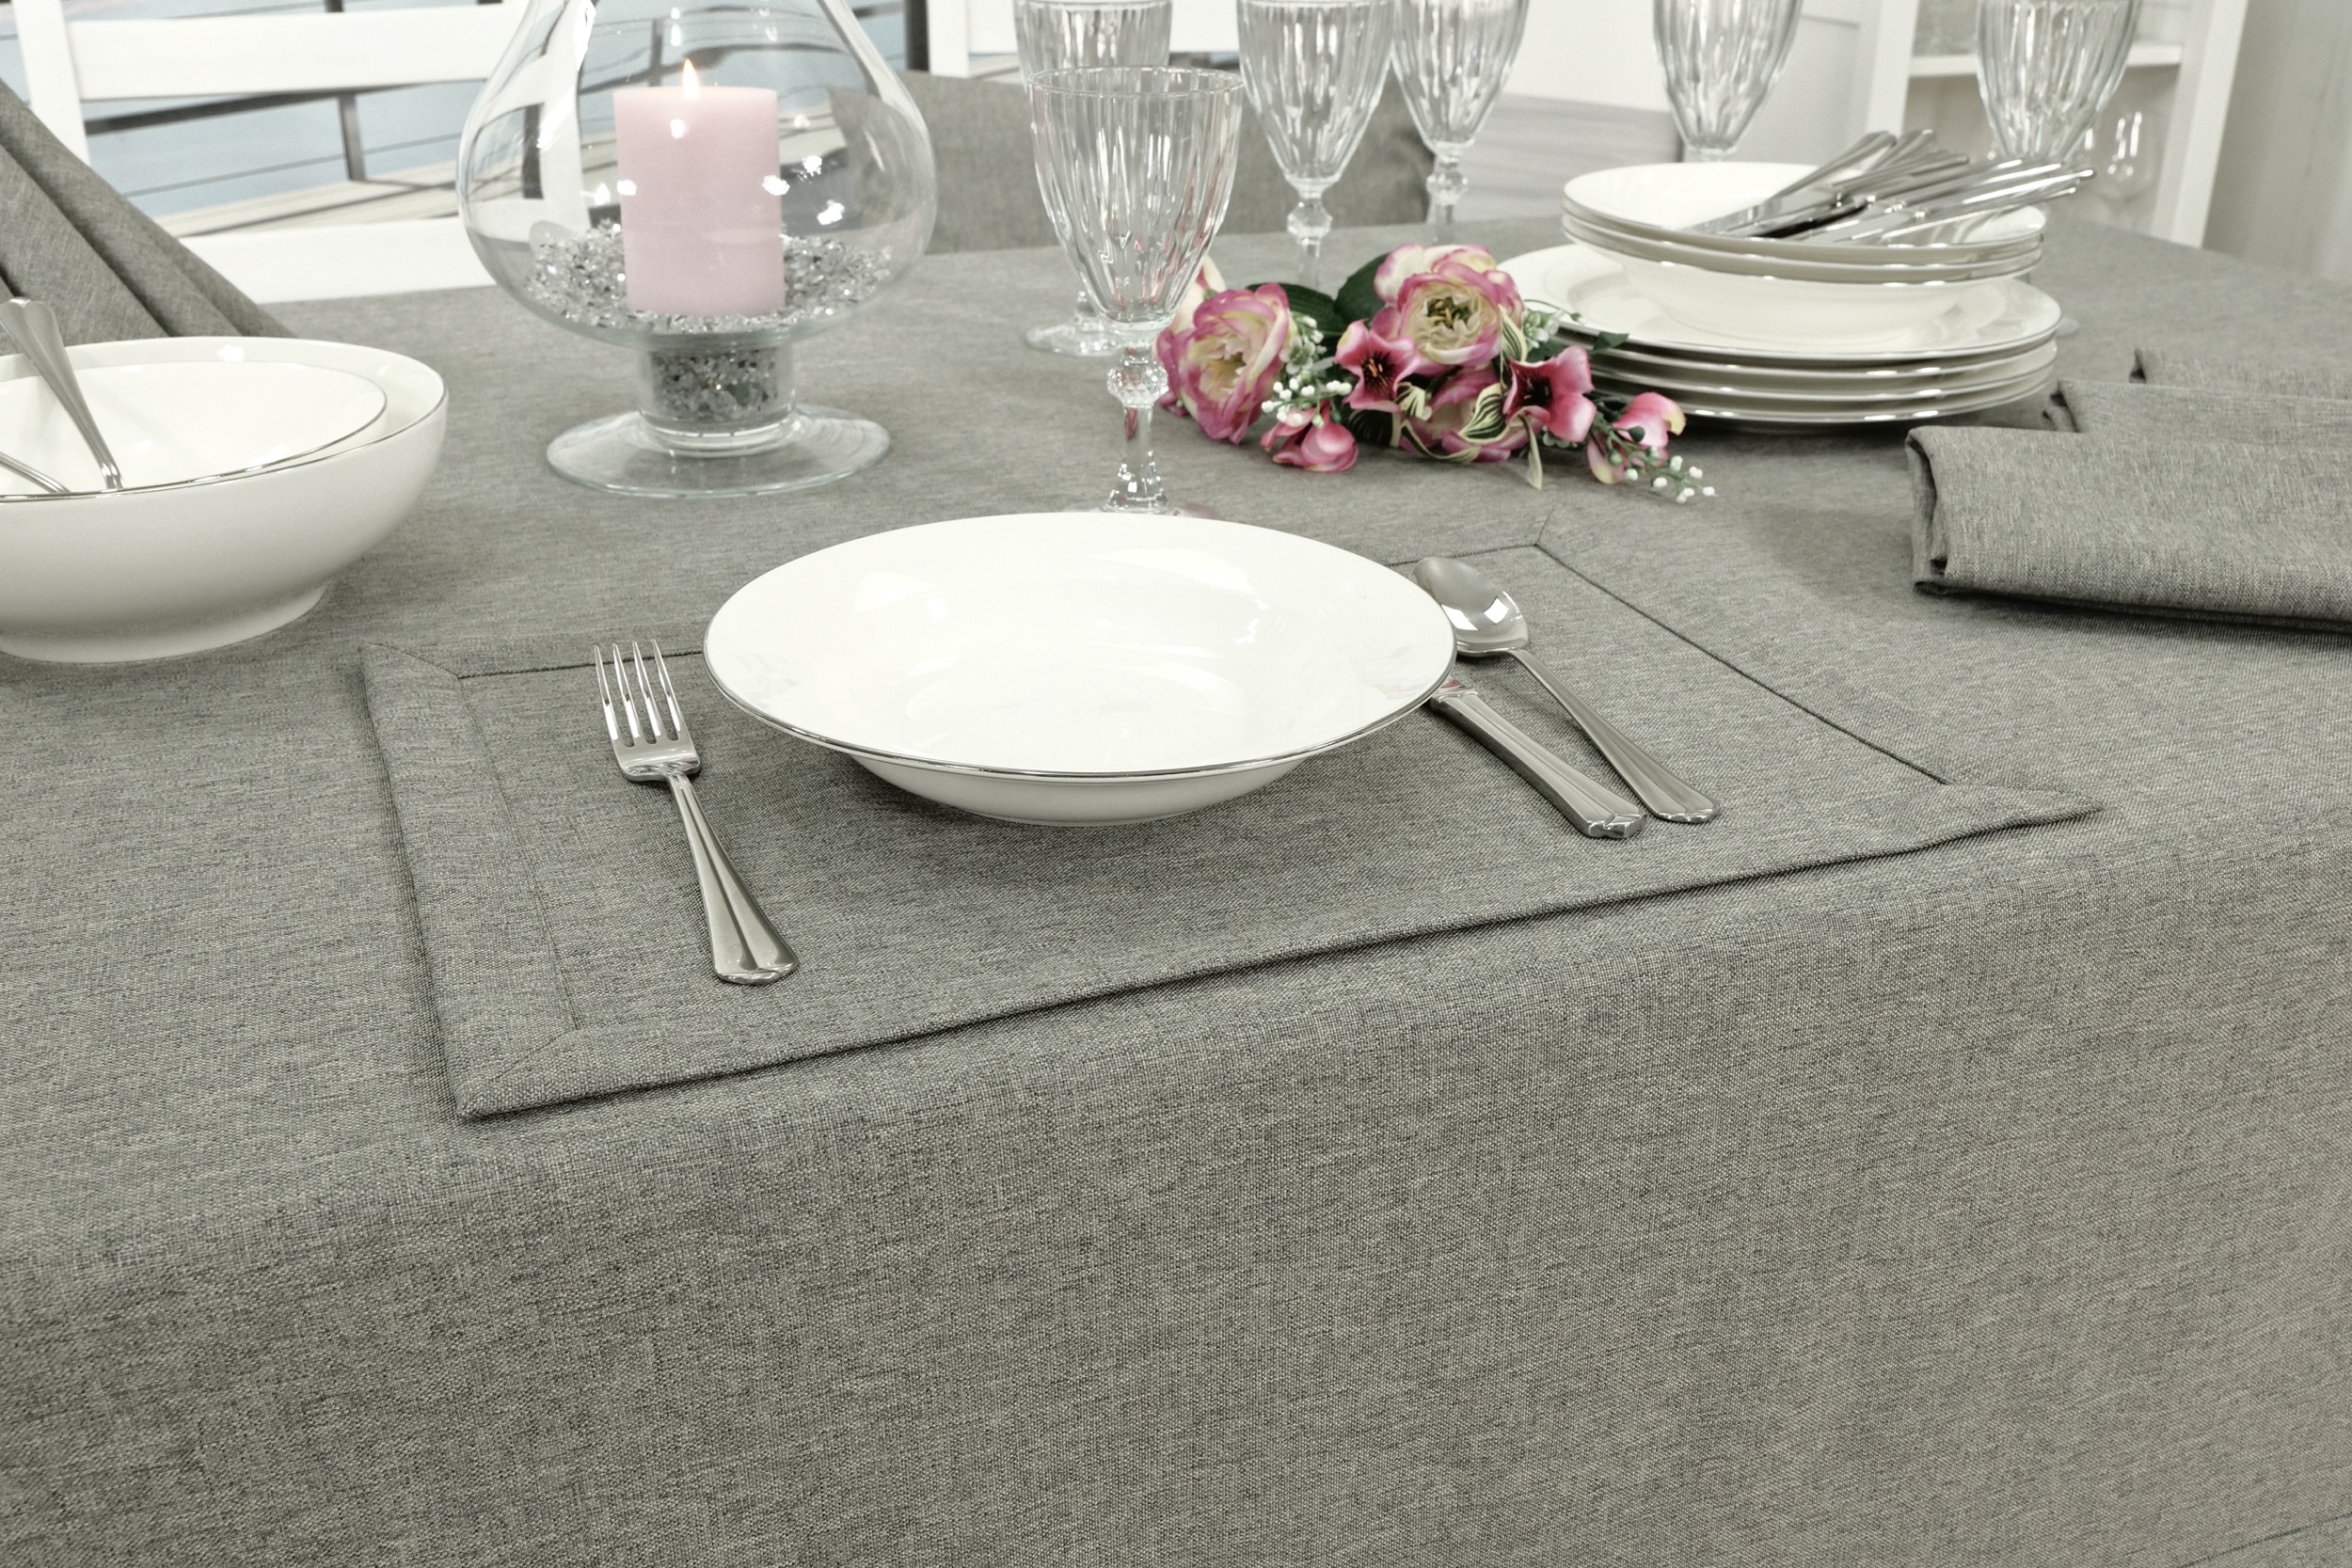 Edle Tischdecke Grau einfarbig Peony Breite 130 cm